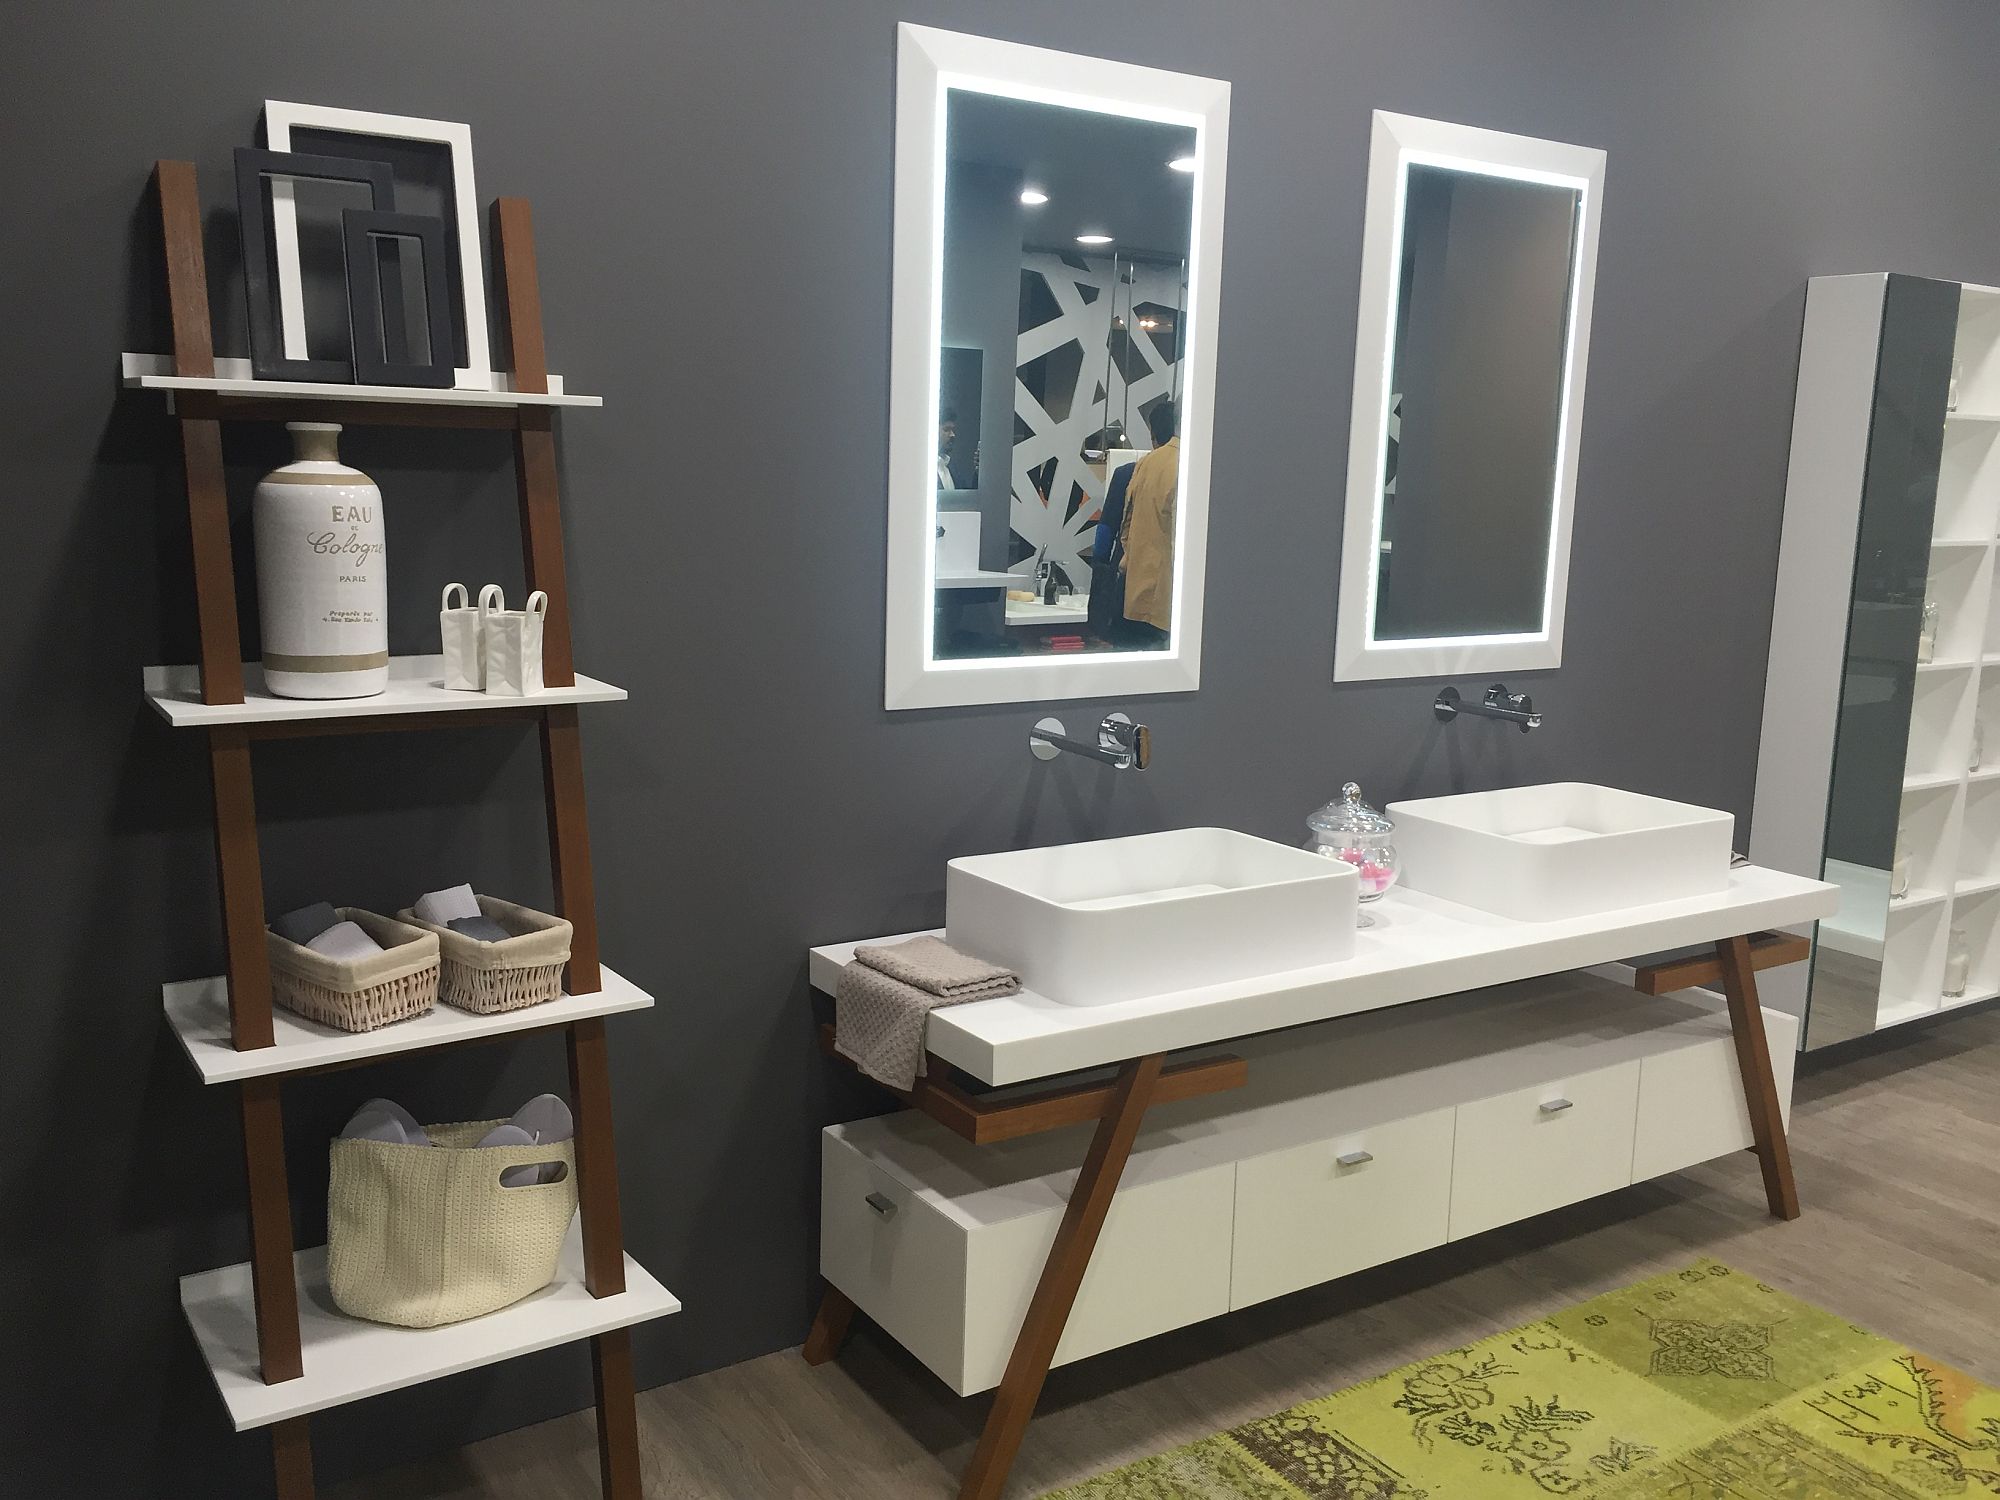 Organized-bathroom-idea-with-beautifully-lit-mirror-frames